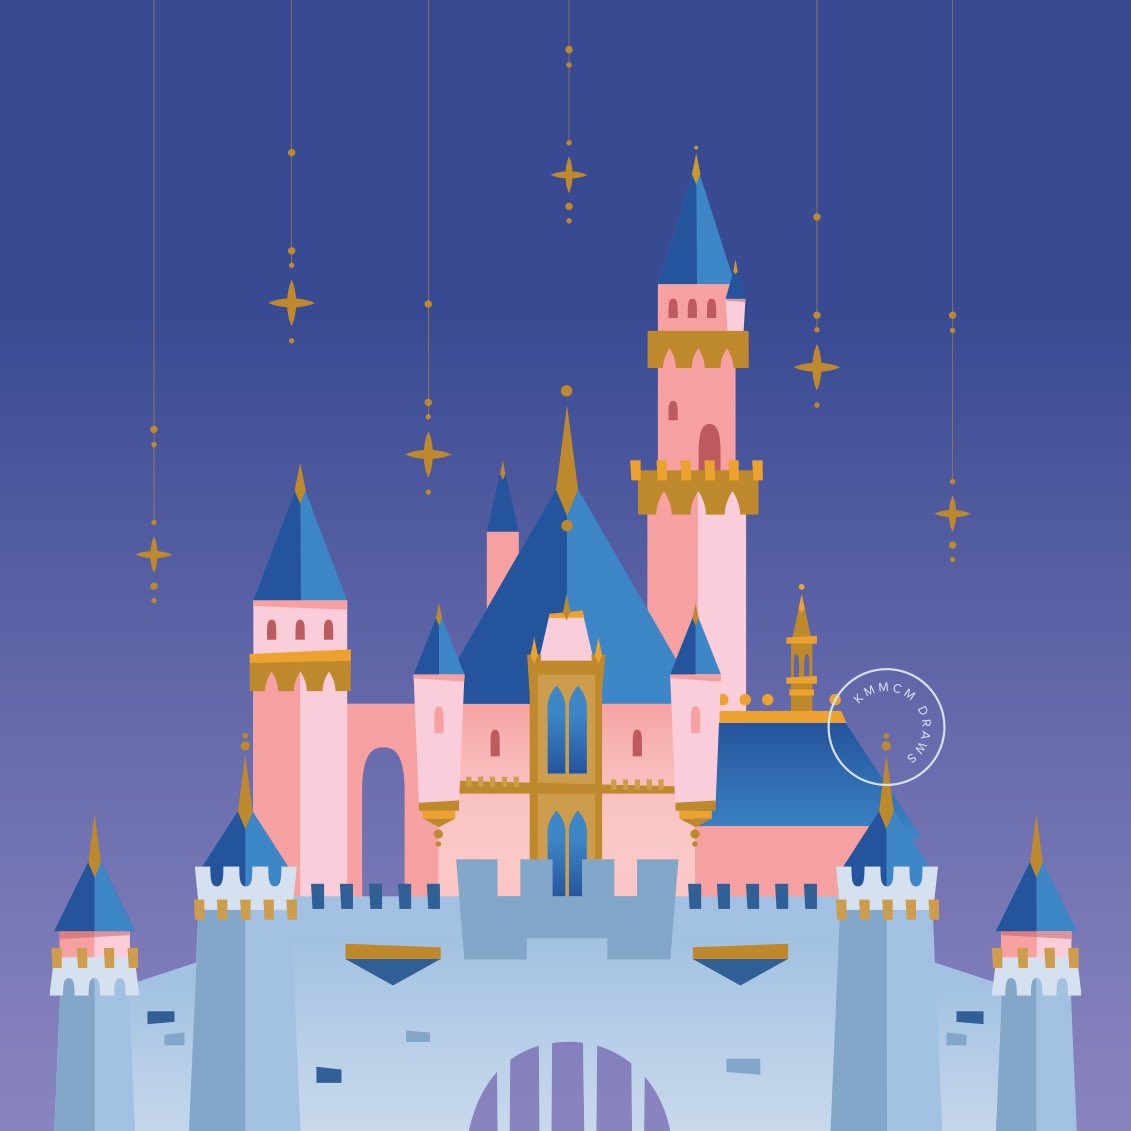 Happy 65th birthday #Disneyland 

#Disneyland65